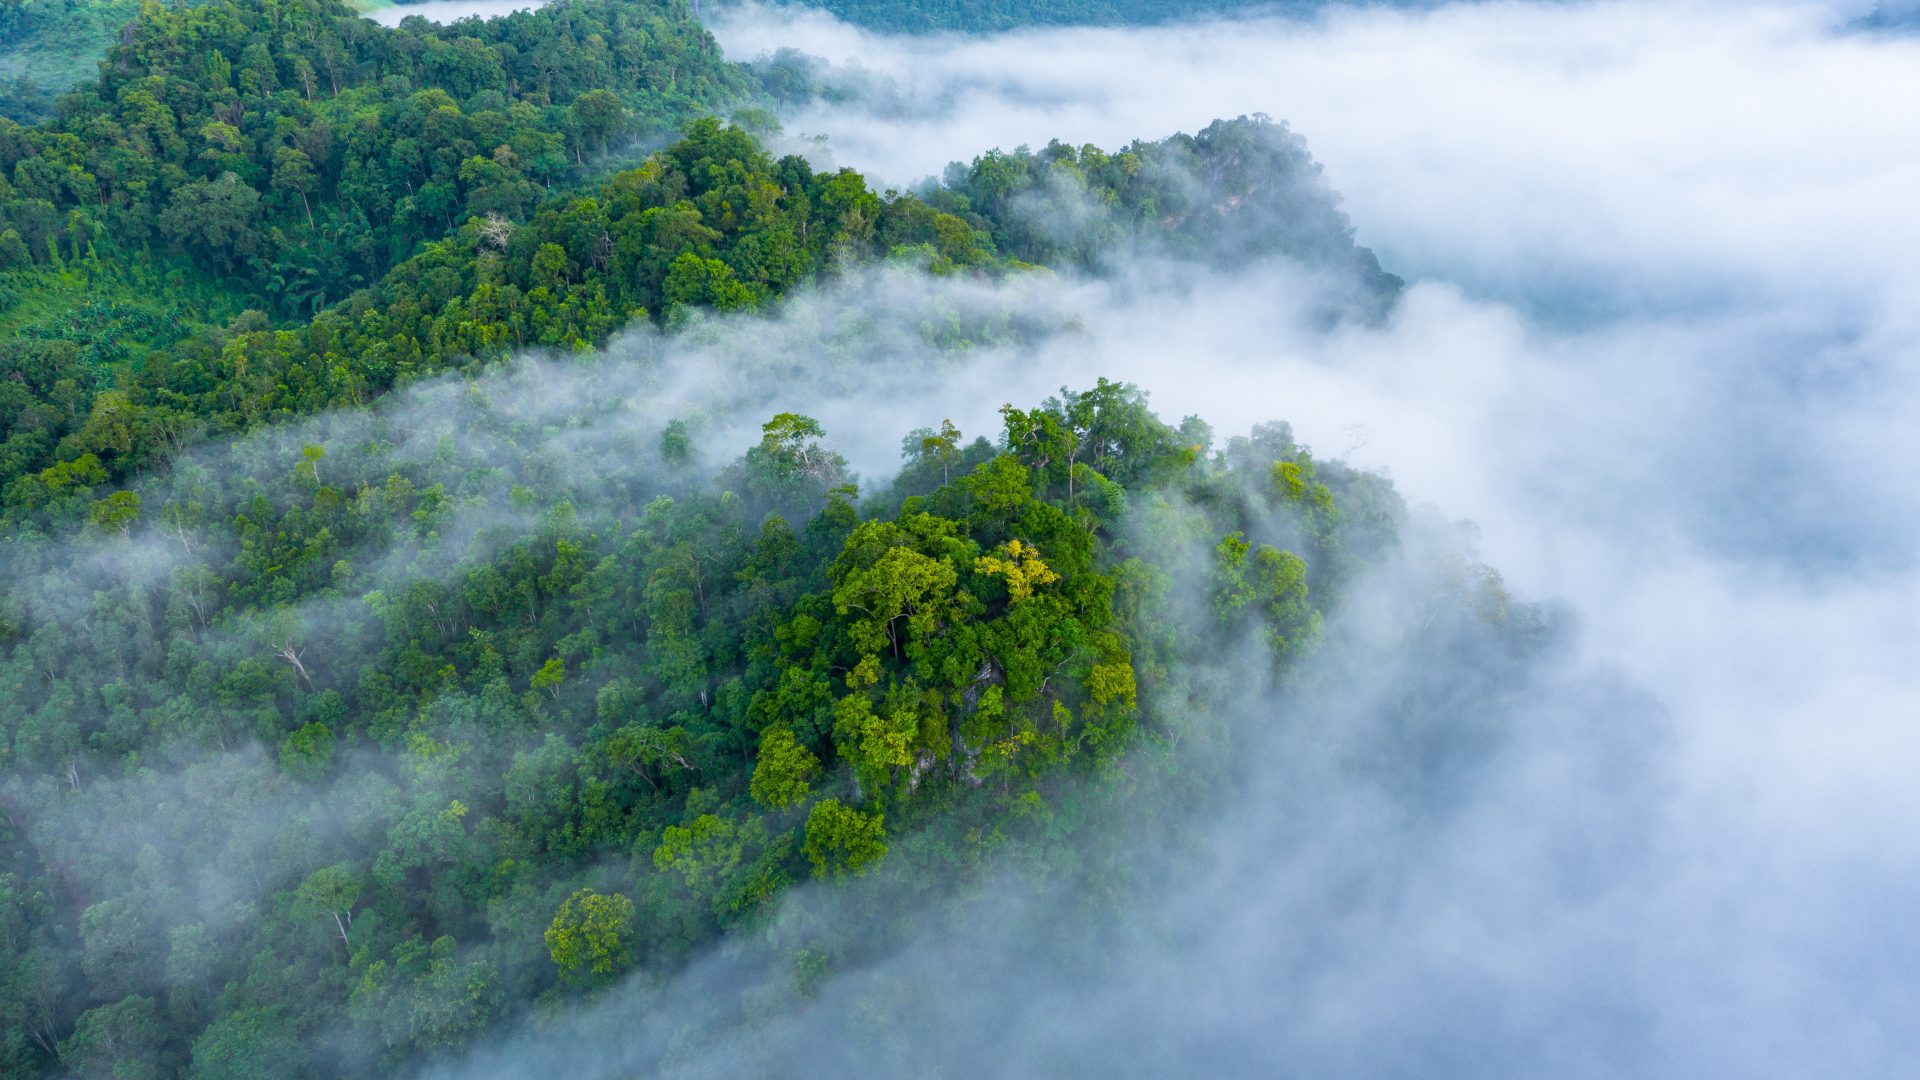 Vue aérienne de la brume matinale sur la forêt tropicale.